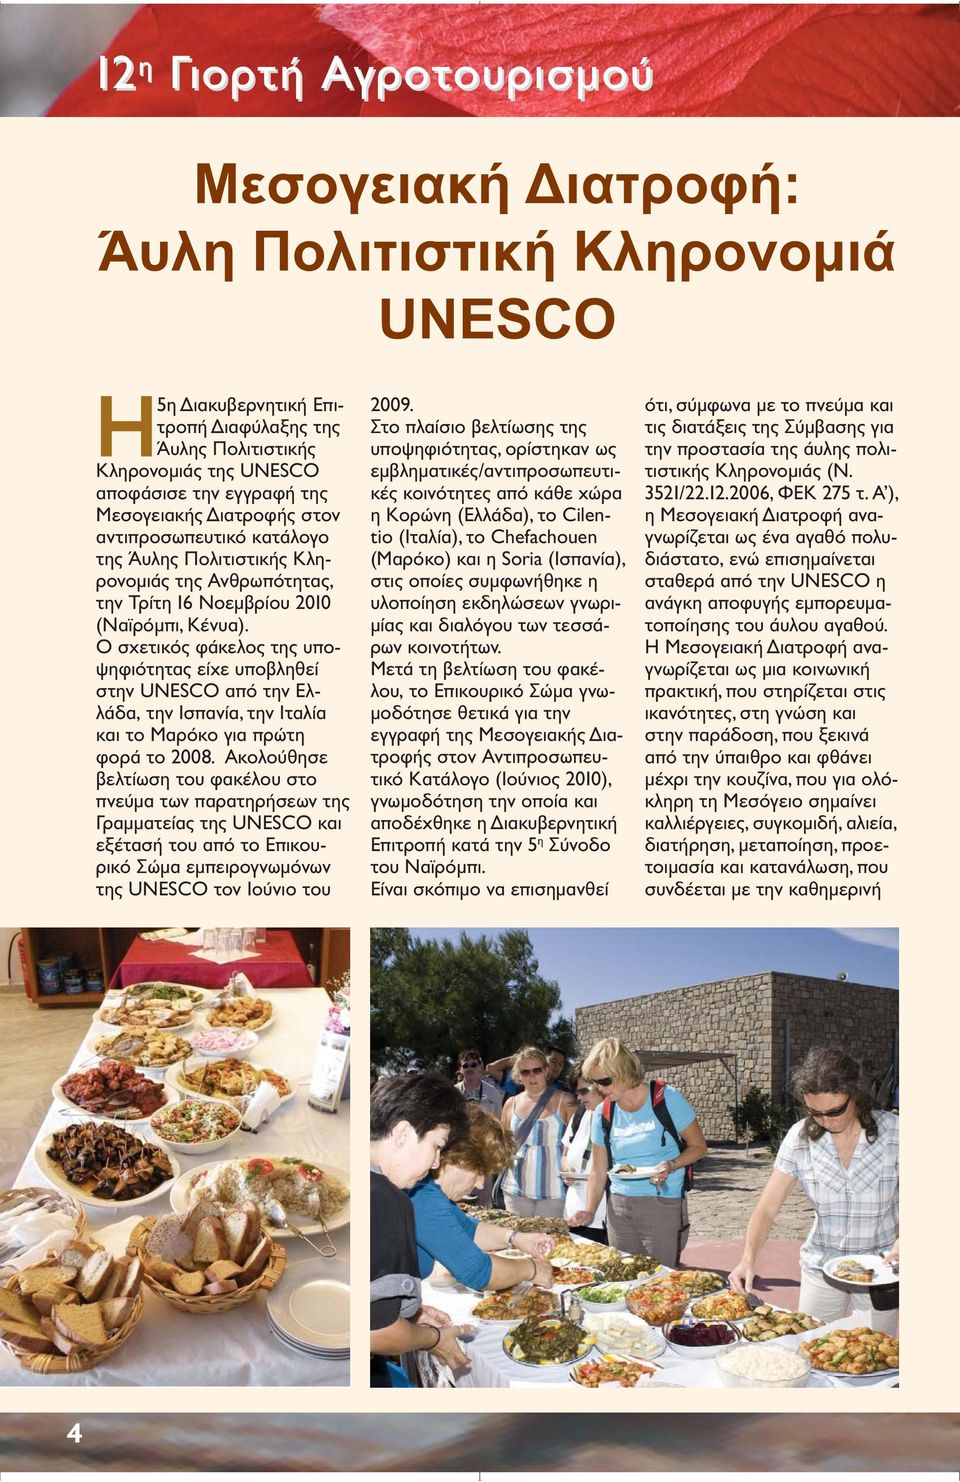 Ο σχετικός φάκελος της υποψηφιότητας είχε υποβληθεί στην UNESCO από την Ελλάδα, την Ισπανία, την Ιταλία και το Μαρόκο για πρώτη φορά το 2008.